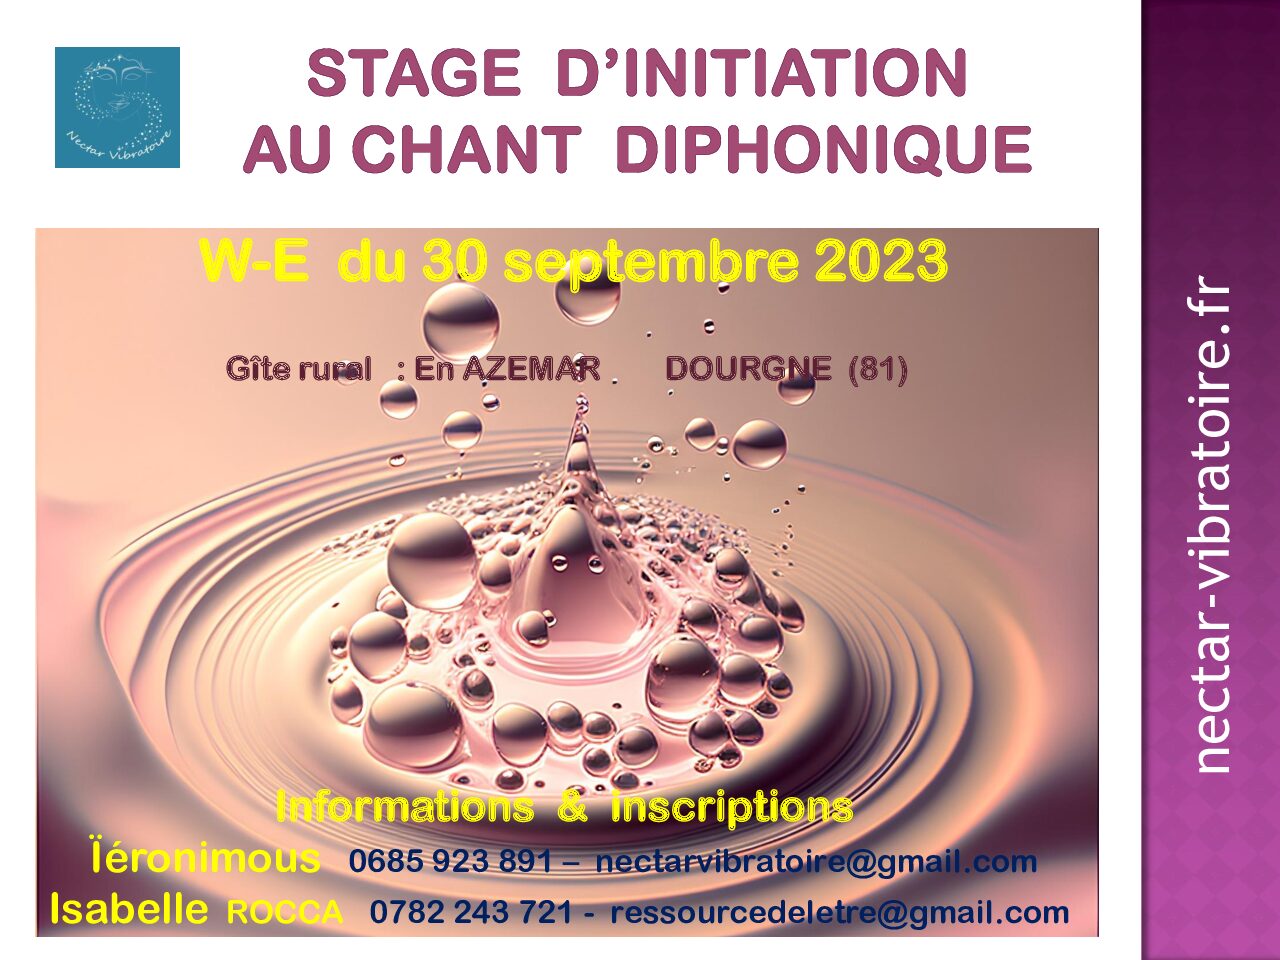 Stage d’initiation au Chant Diphonique à Dourgne (81) le w-e du 30 septembre 2023